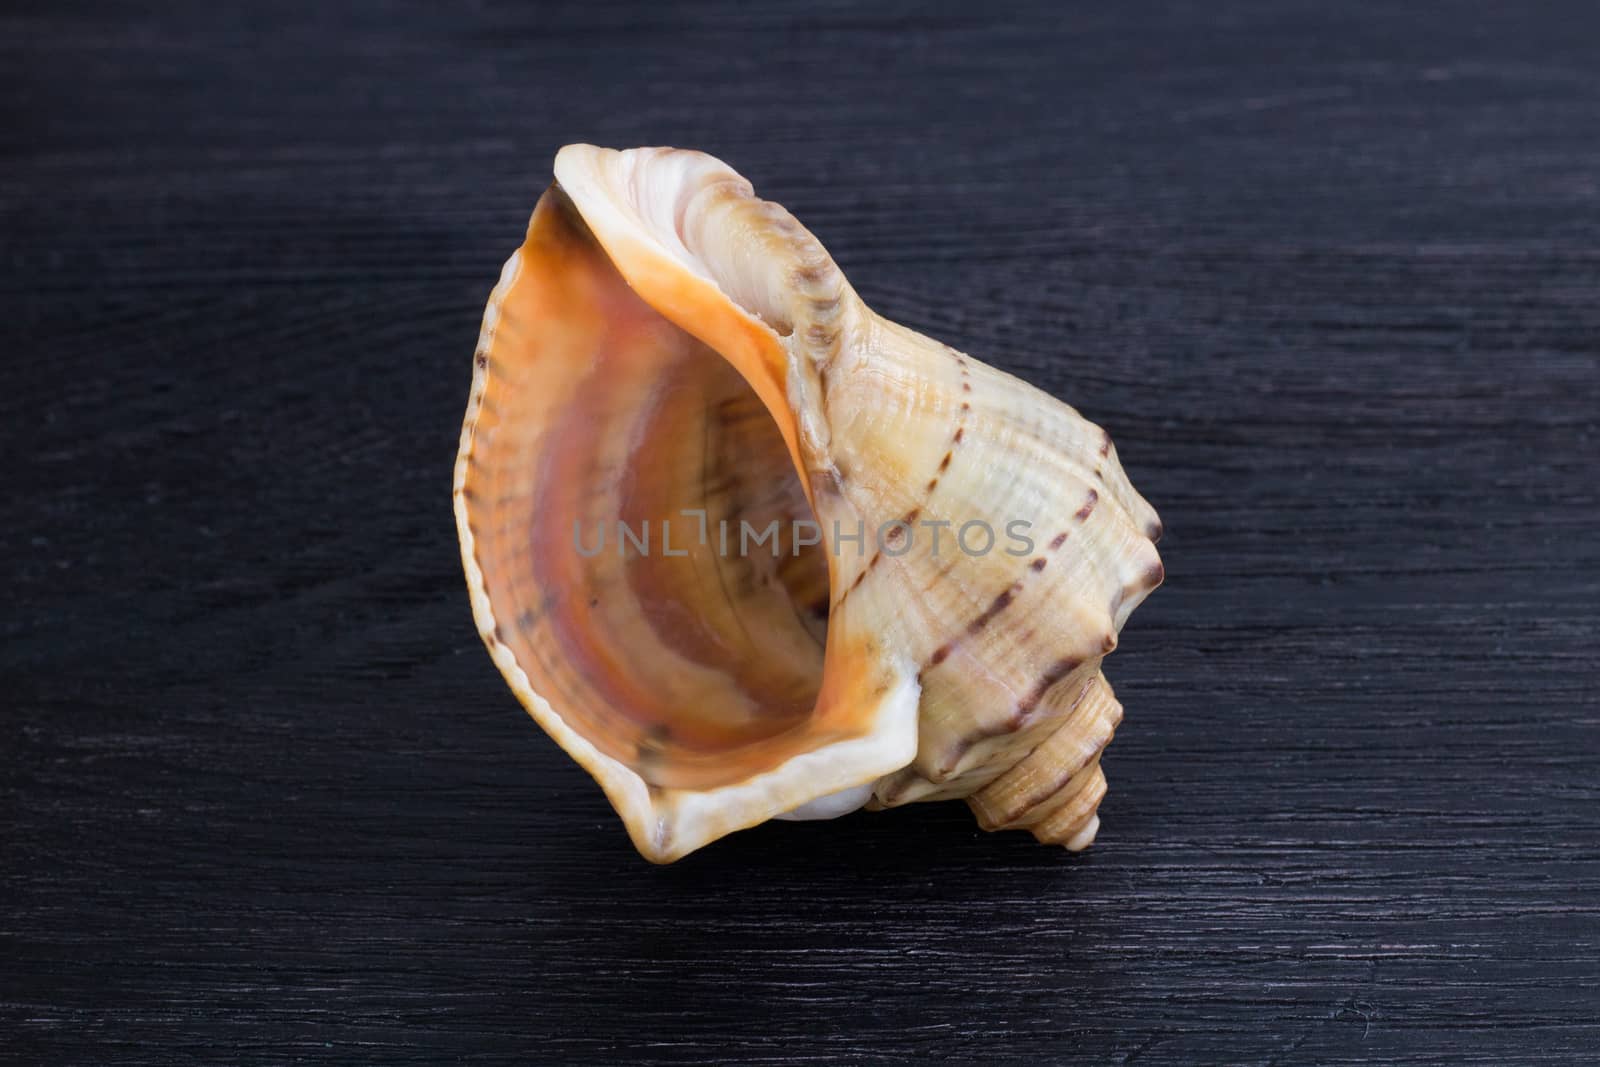 Big bright orange yellow gastropod close-up on black wooden back by VeraVerano